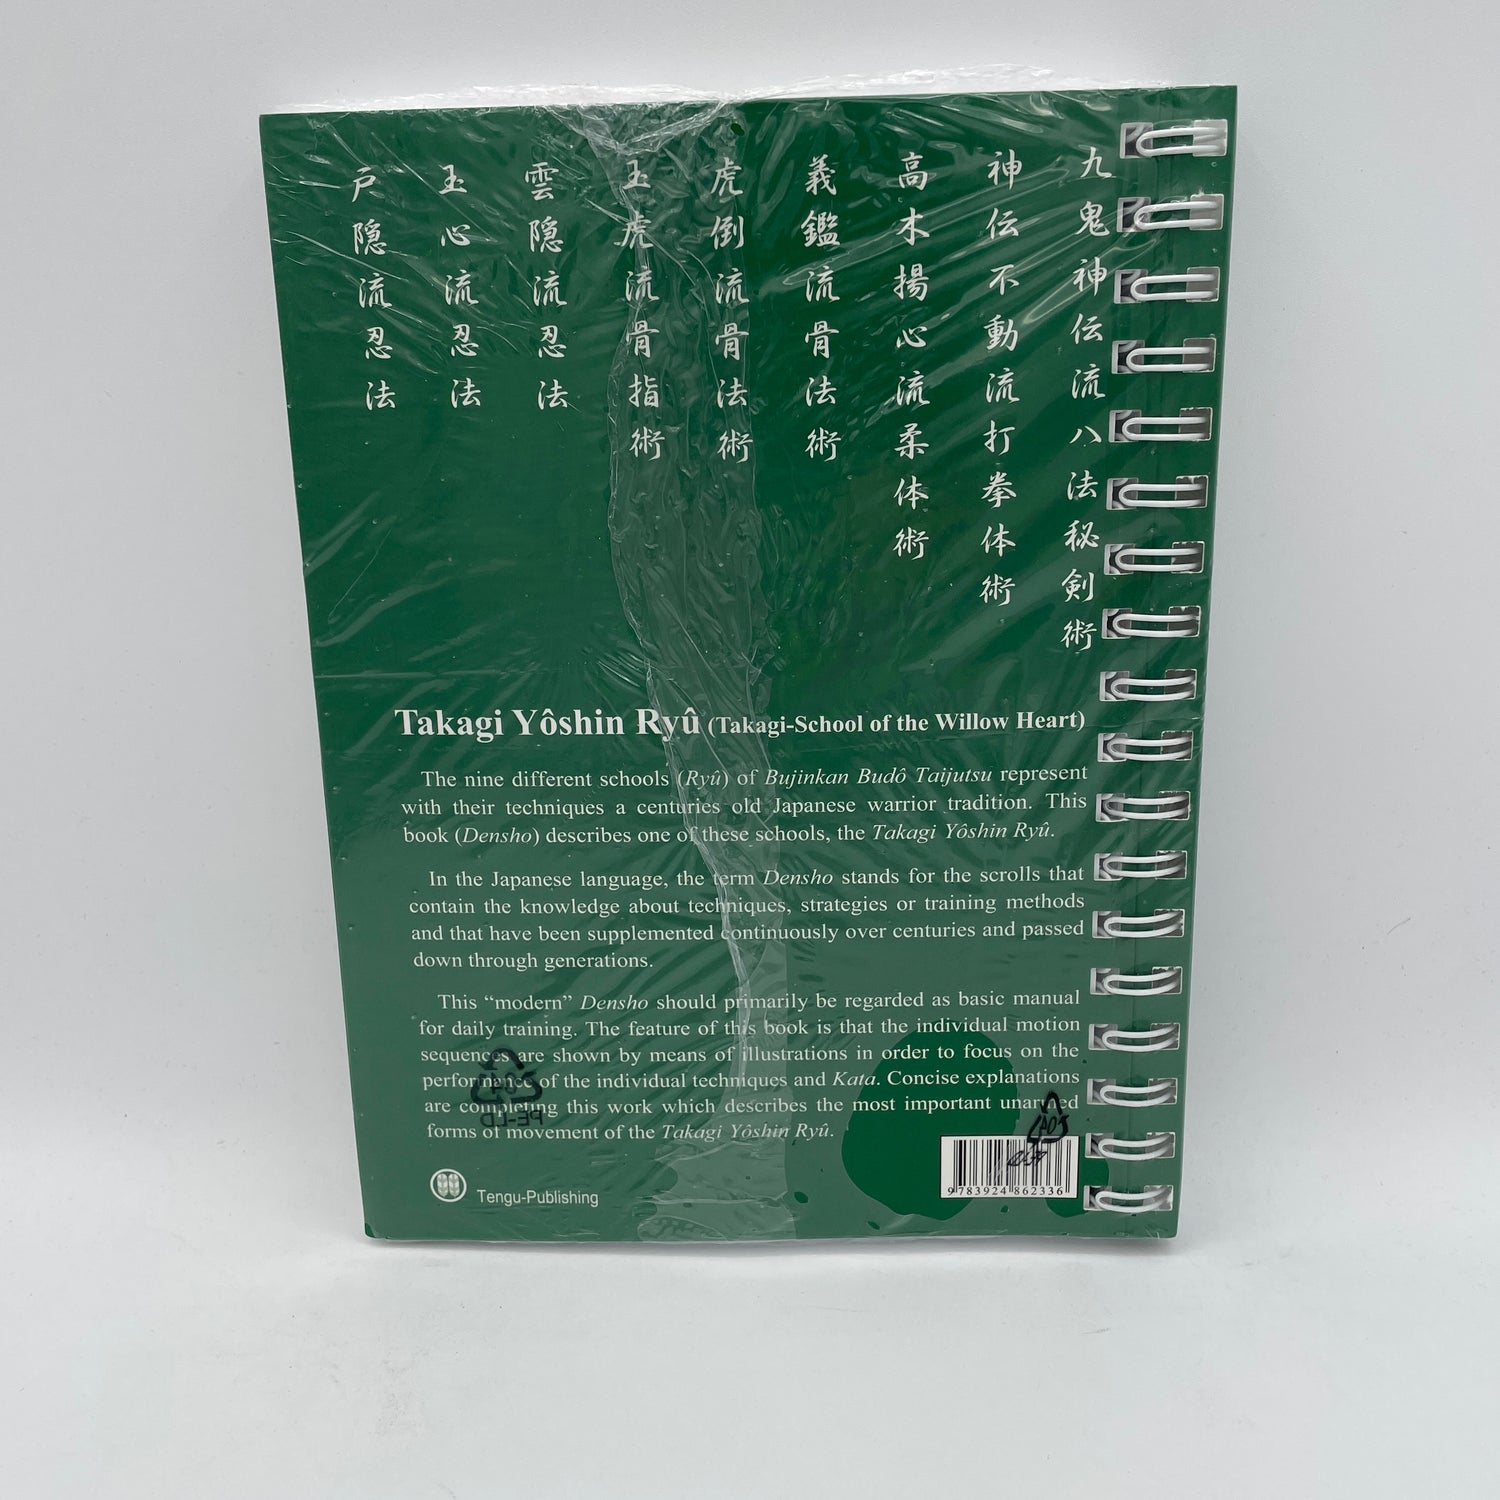 Bujinkan Budo Densho Book 7 Takagi Yoshin Ryu by Carsten Kuhn